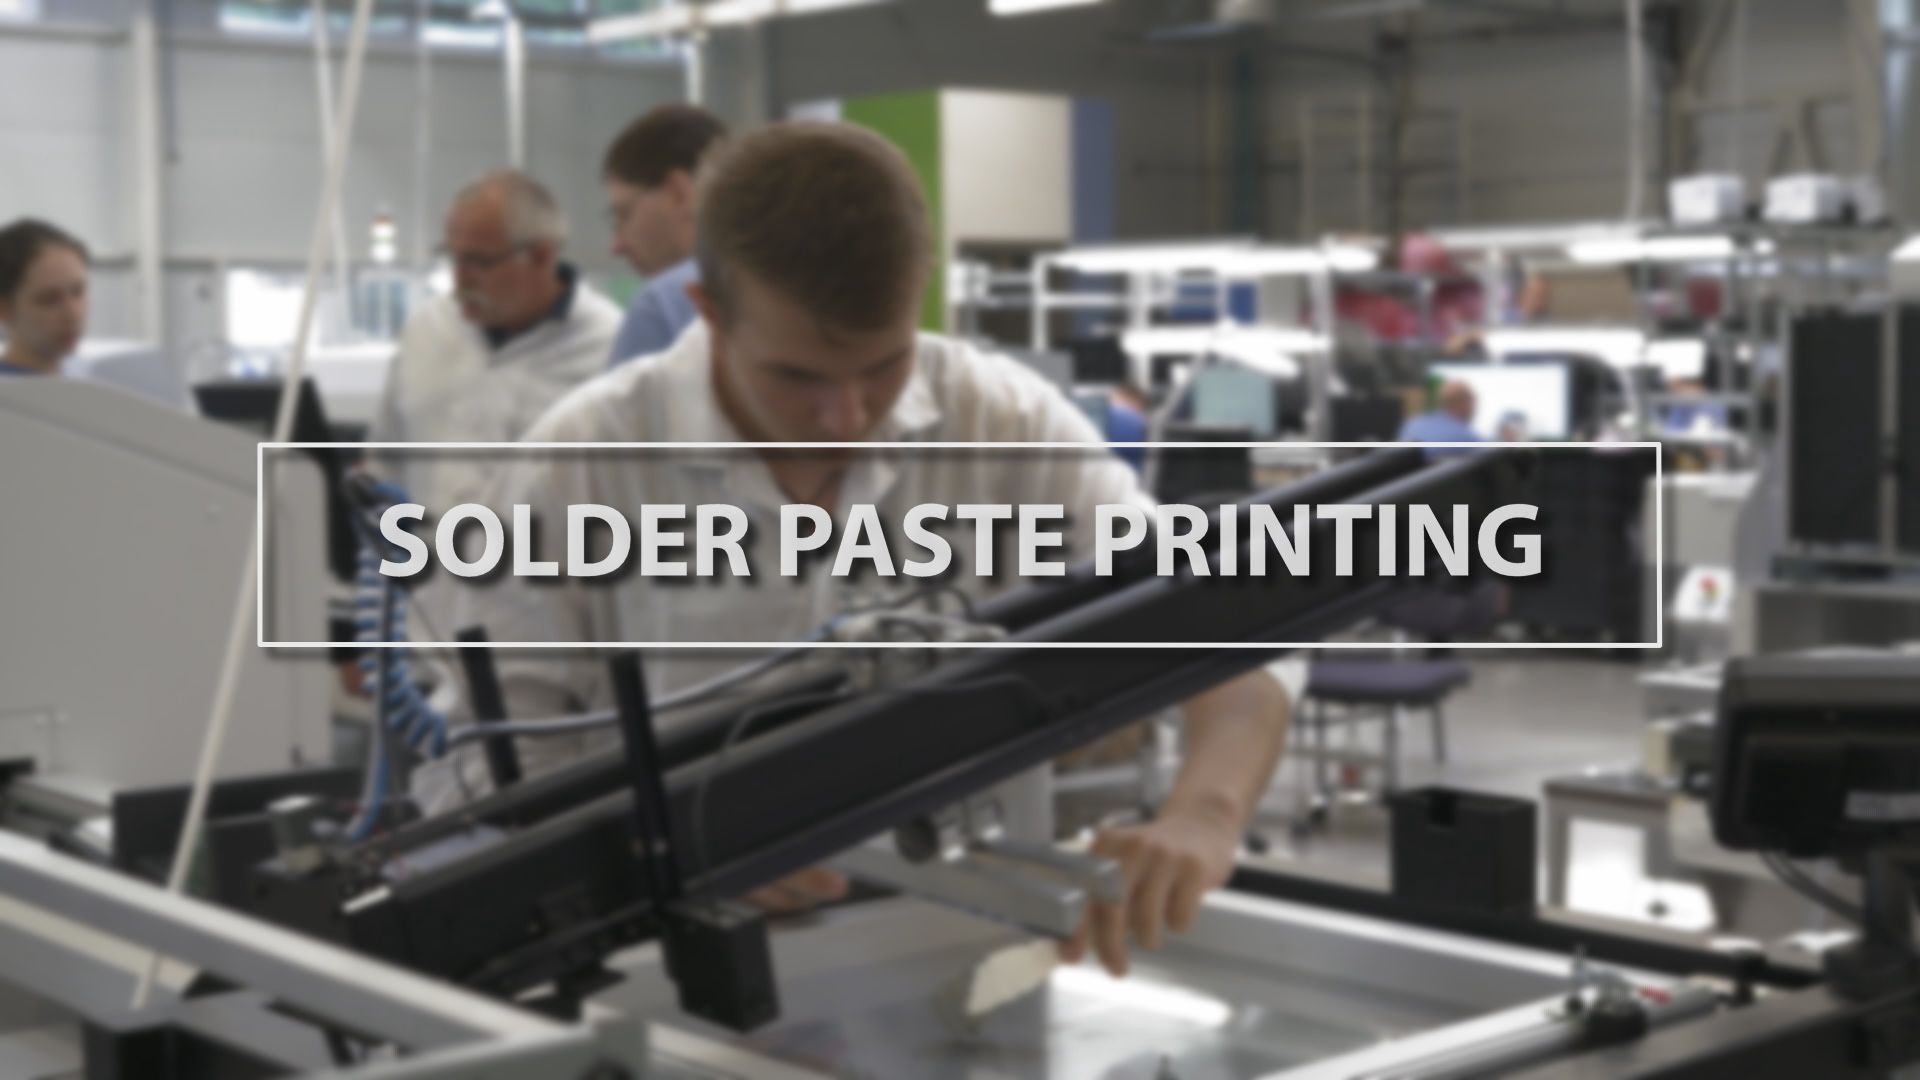 Technology Thursday: Solder Paste Printing